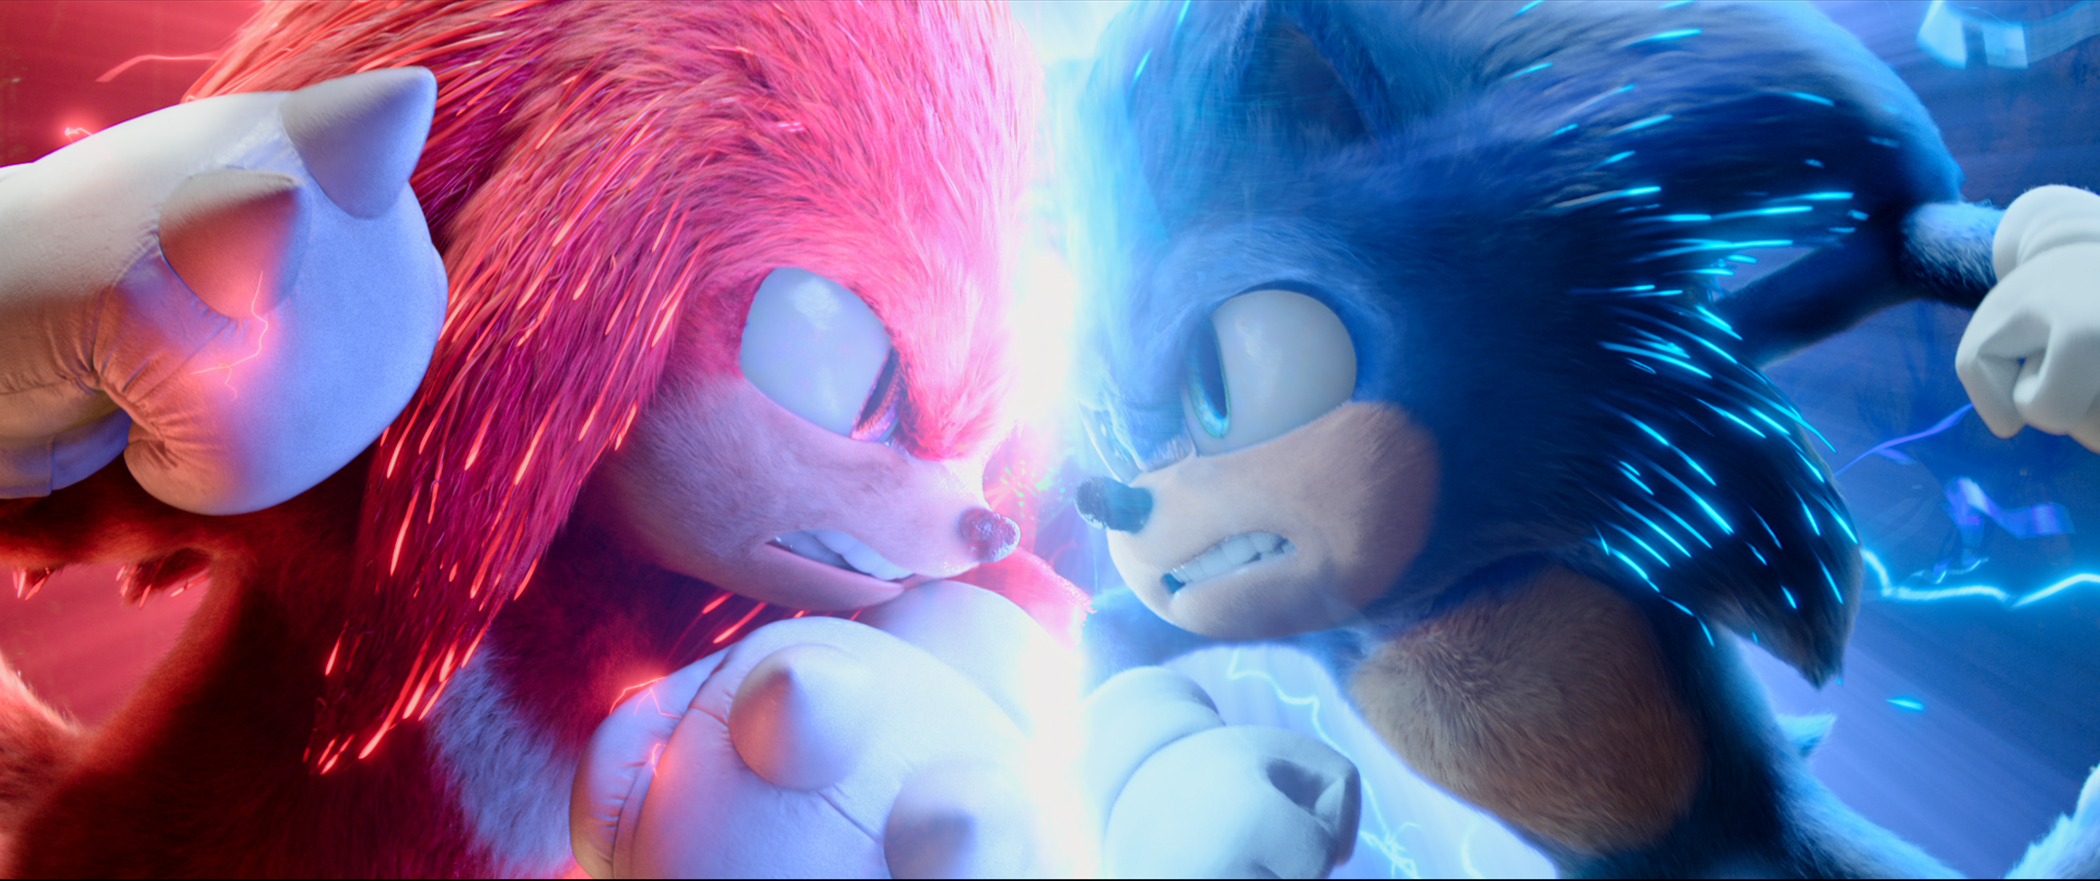 Trailer de Sonic 2 mostra estreia de Tails e Knuckles